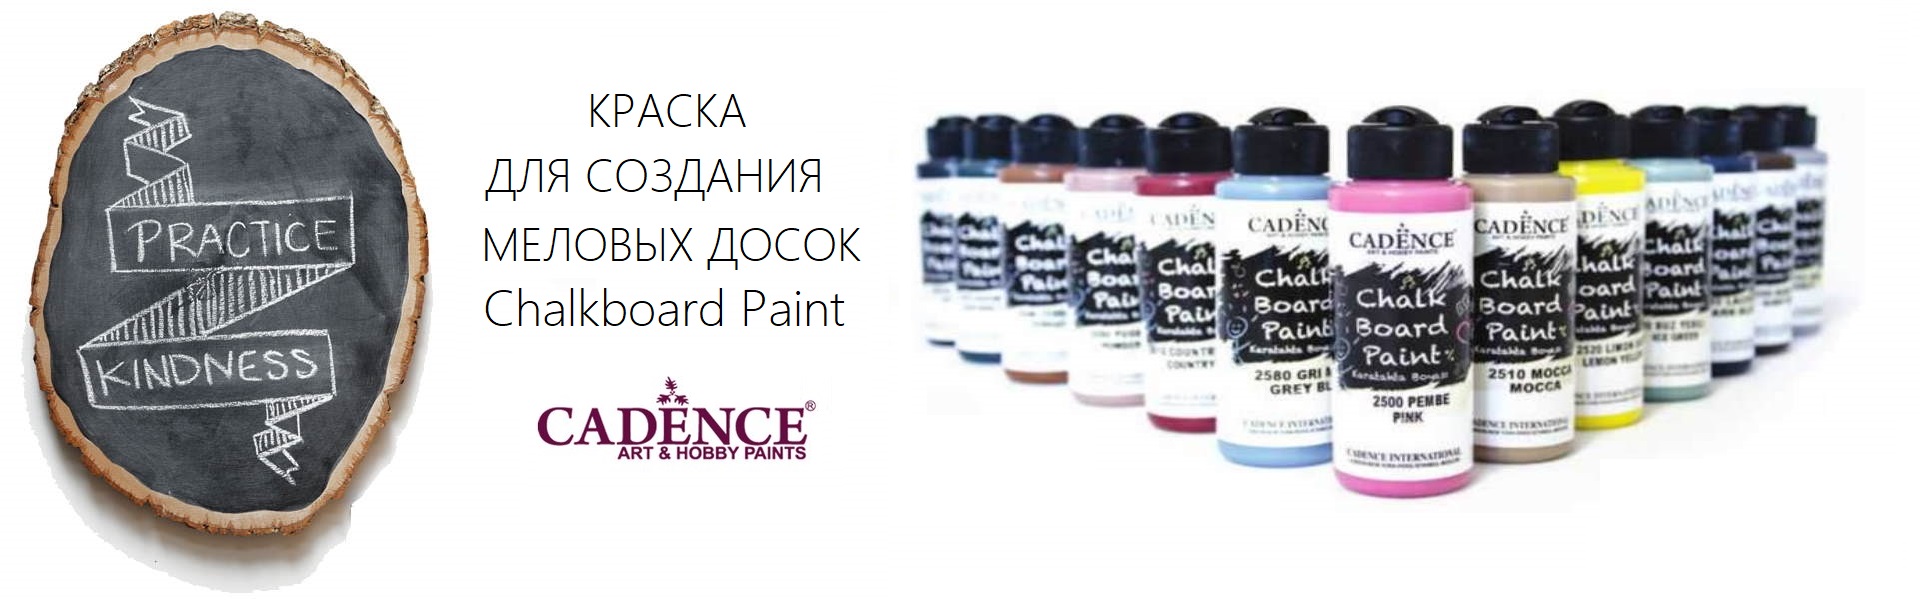 Краска для создания меловых досок Cadence Chalkboard Paint 